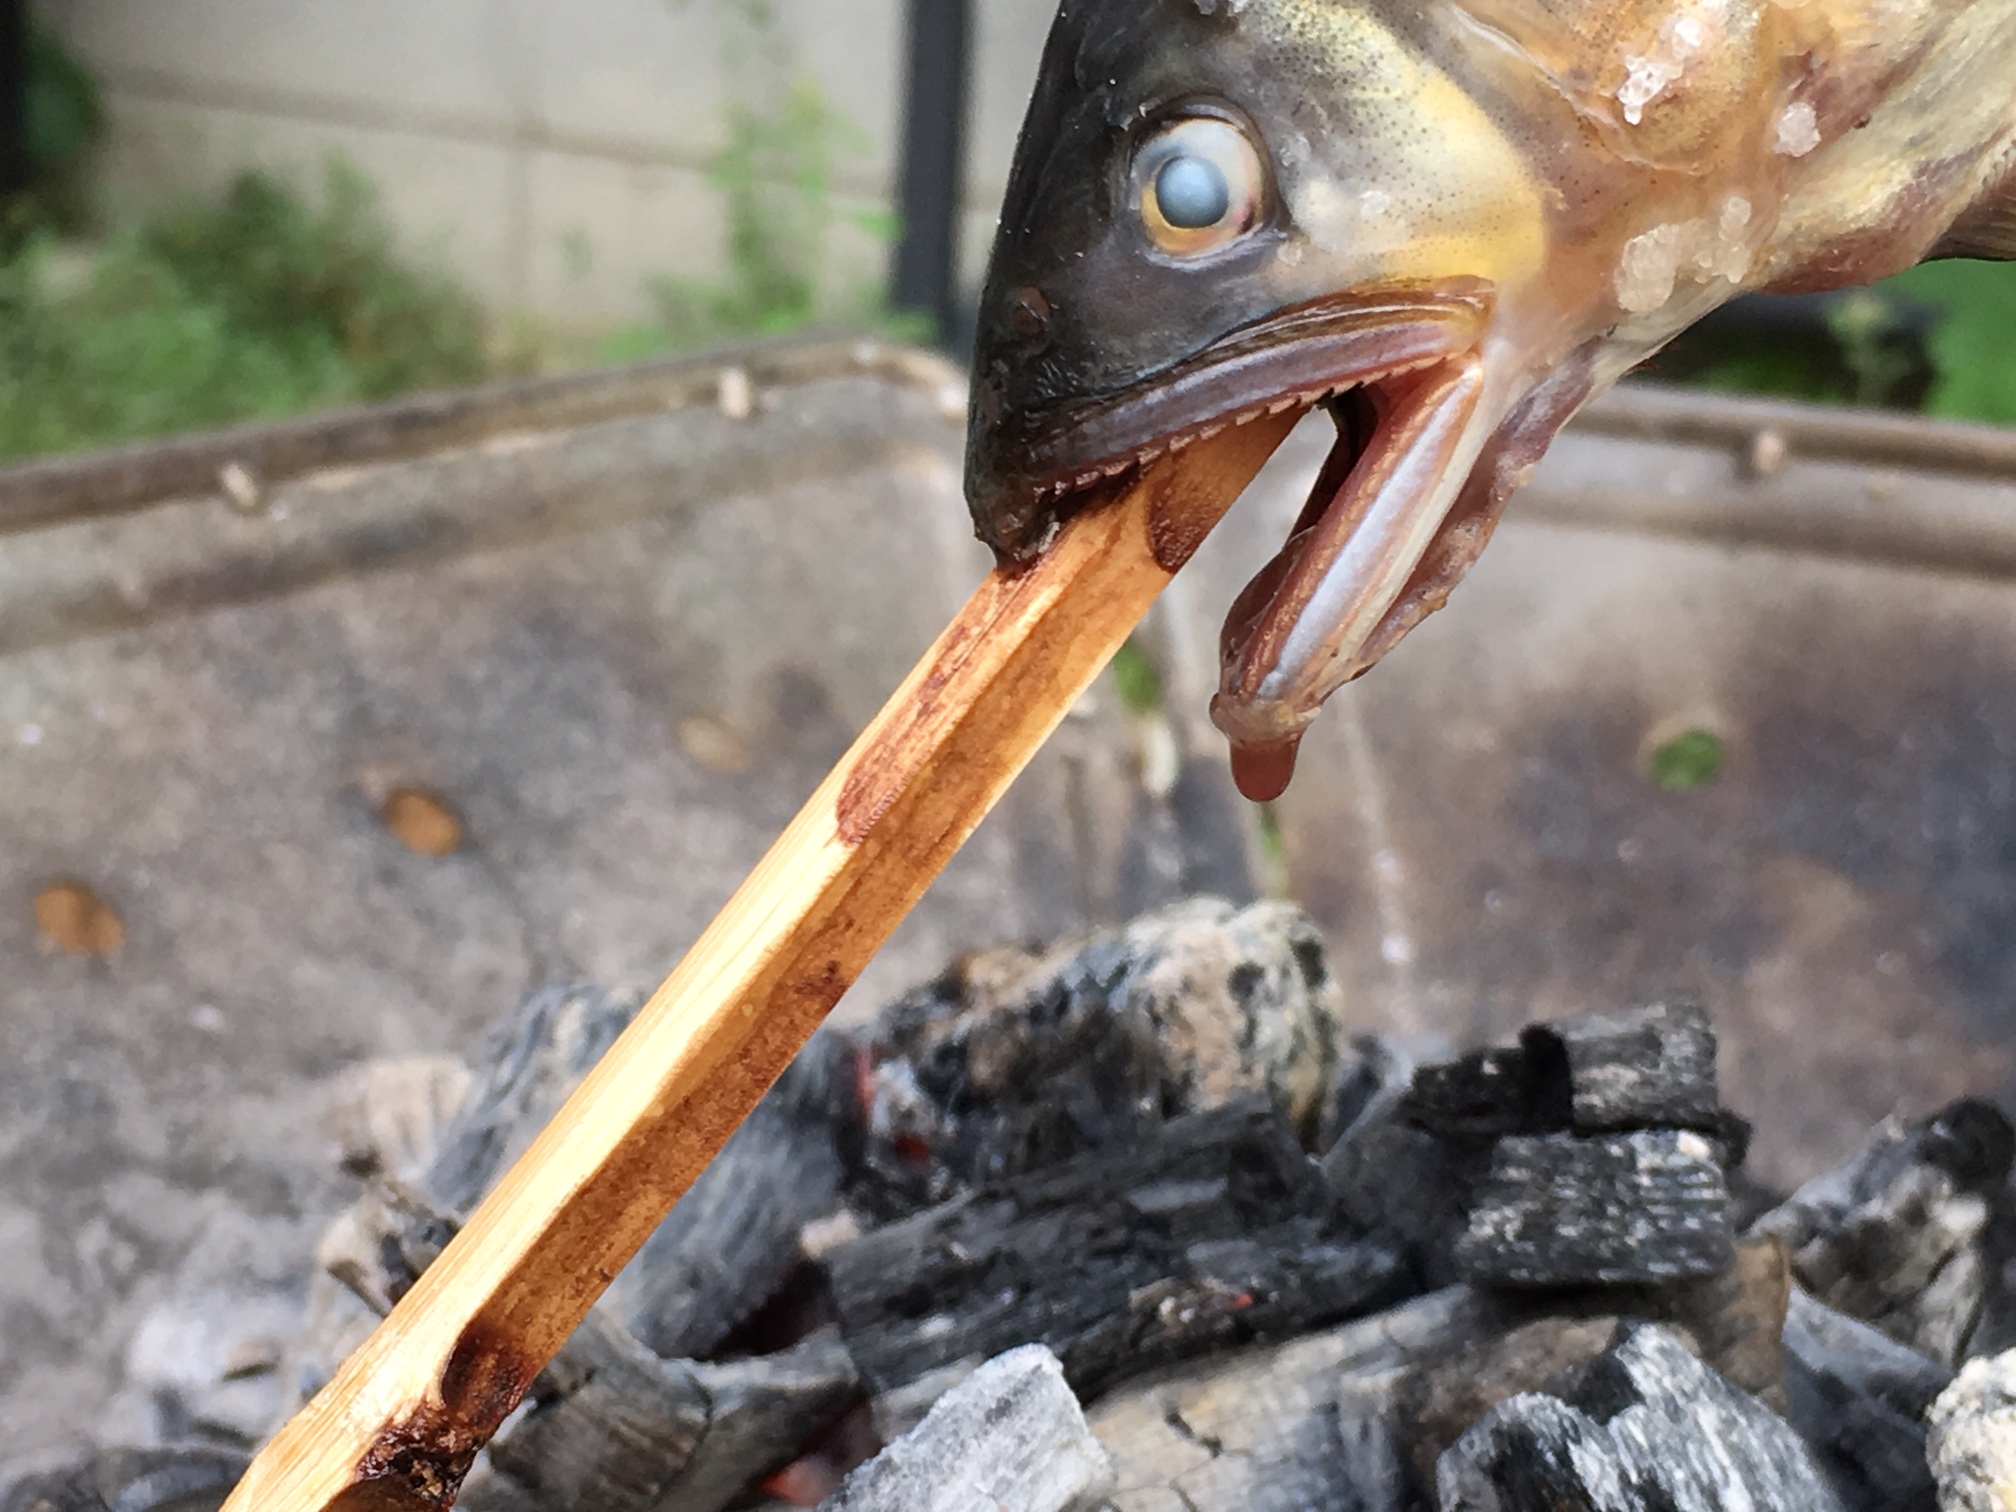 スノーピークの焚火台でできるアユの囲炉裏風の串焼き アウトドア料理が美味しい 孤独のアウトドアと狩猟ライフ 孤独のアウトドアと狩猟ライフ